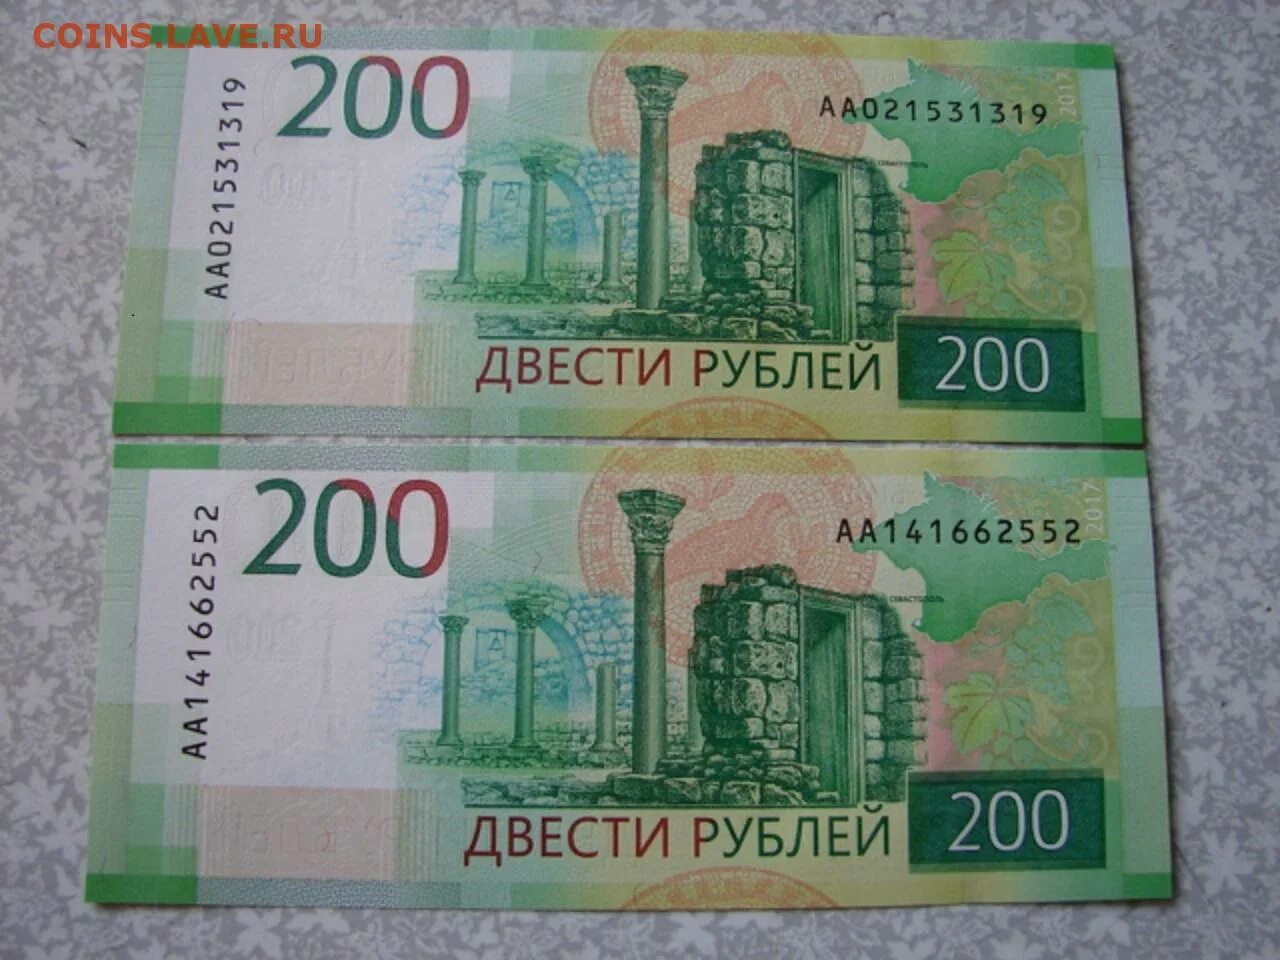 22 200 в рублях. Купюра 200 рублей. 200 Рублей банкнота Крым.